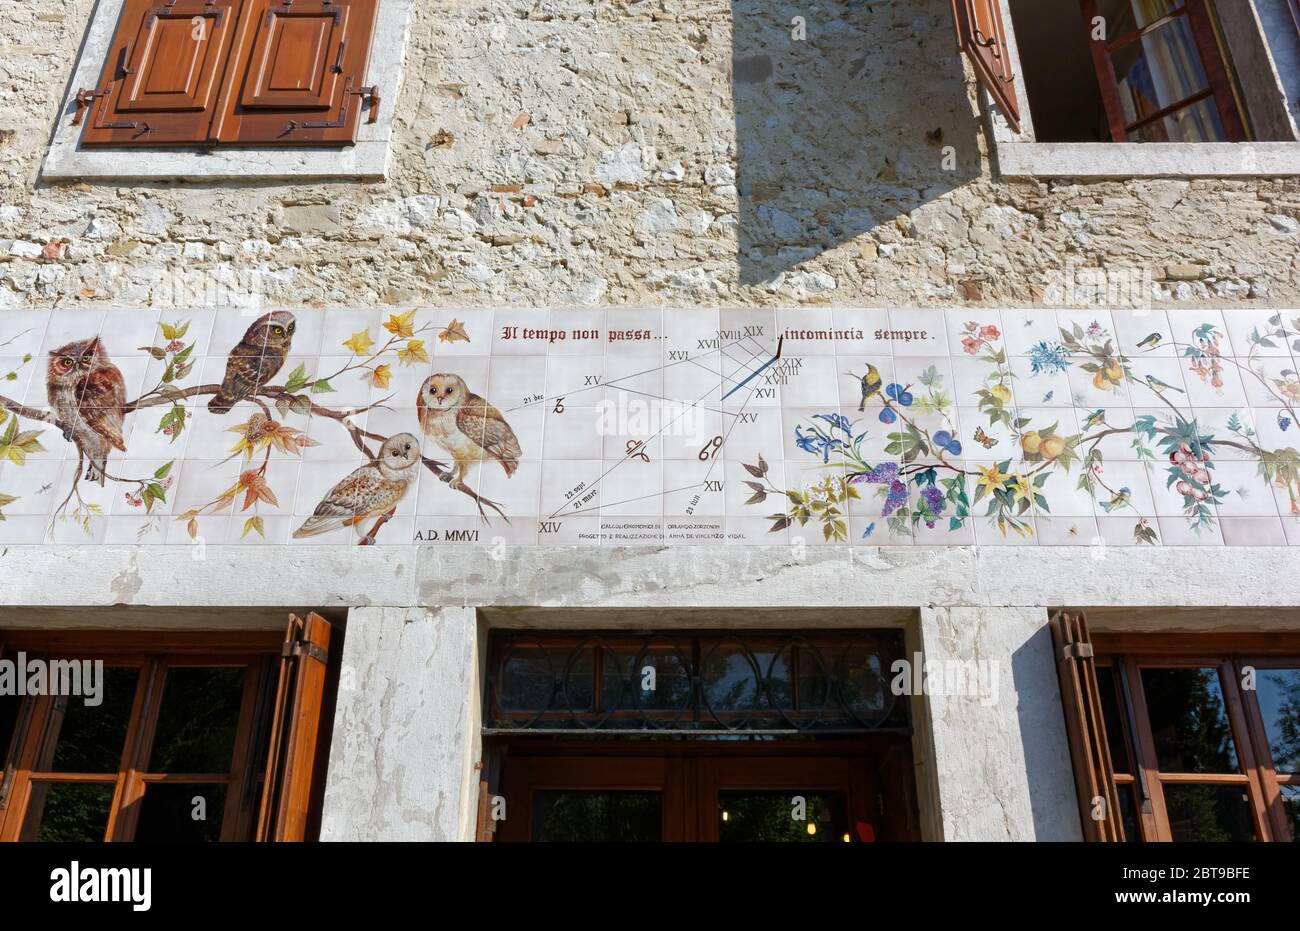 AIELLO DEL FRIULI, Italie - 30 août 2013 : cadran solaire artistique peint sur des carreaux sur le mur extérieur d'une ancienne maison traditionnelle Banque D'Images